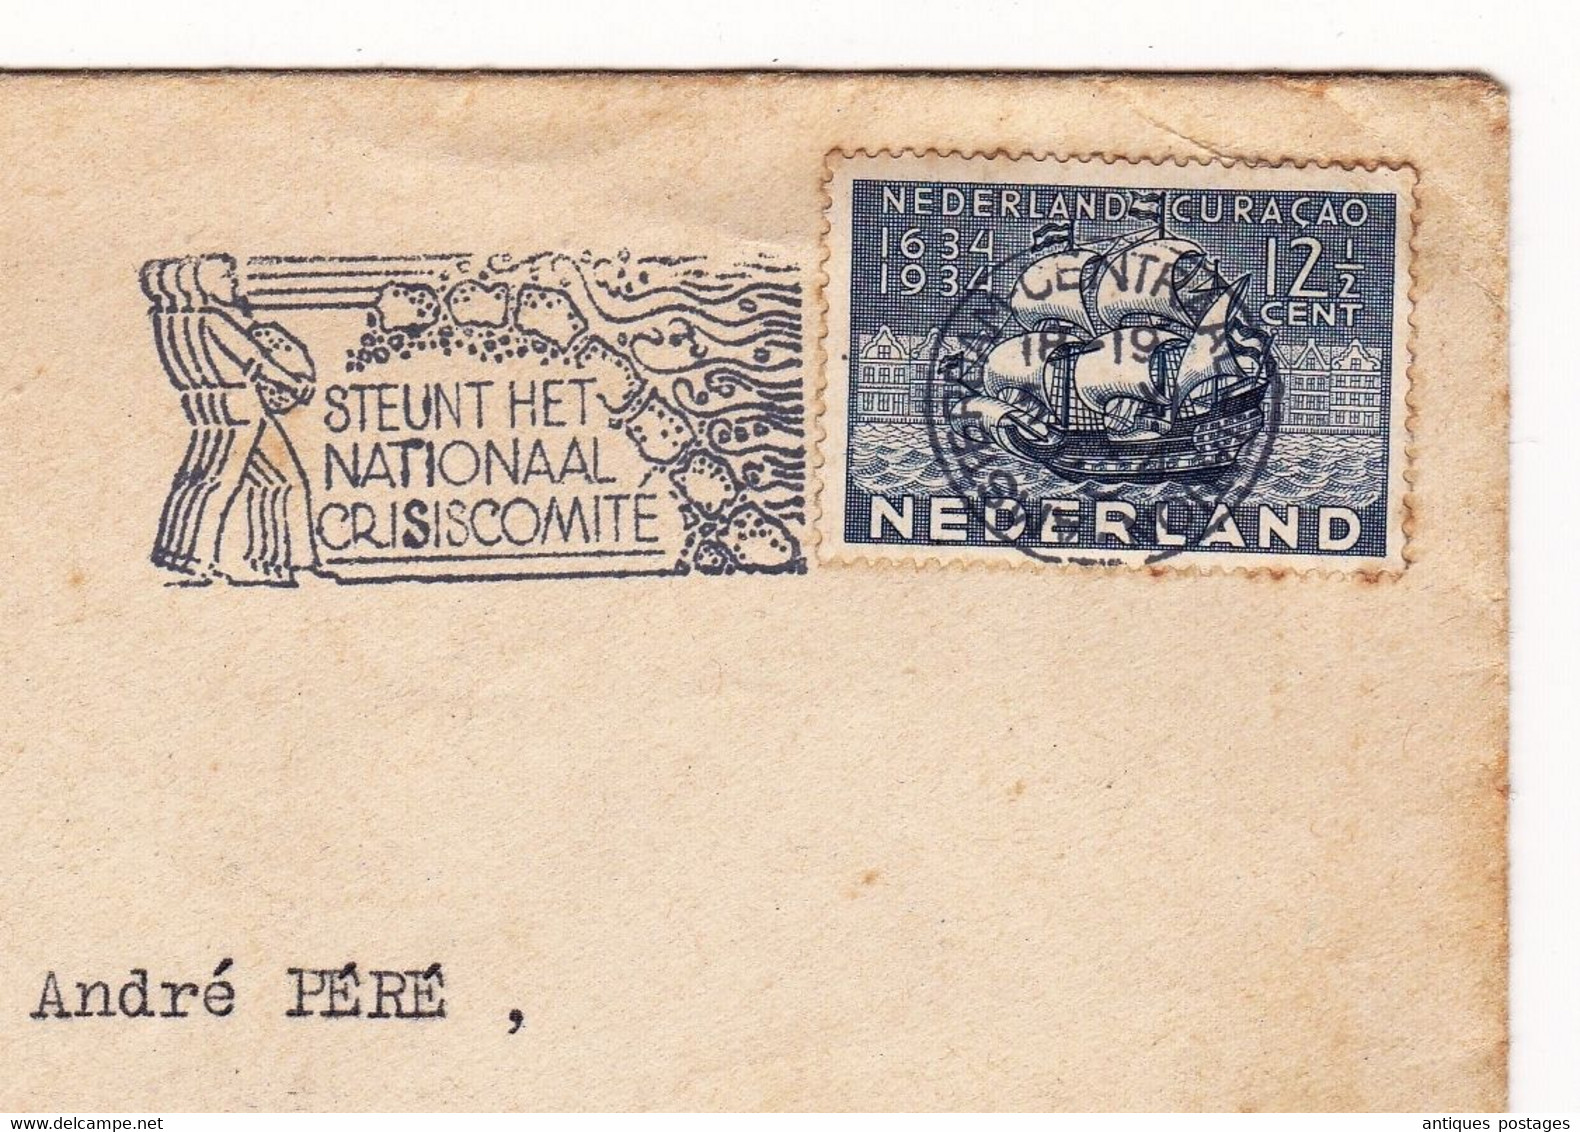 Nederland Amsterdam Curaçao Samadet Landes 1934 Steunt Het Nationaal Crisiscomite La Belle France Arènes De Nîmes - Poststempel